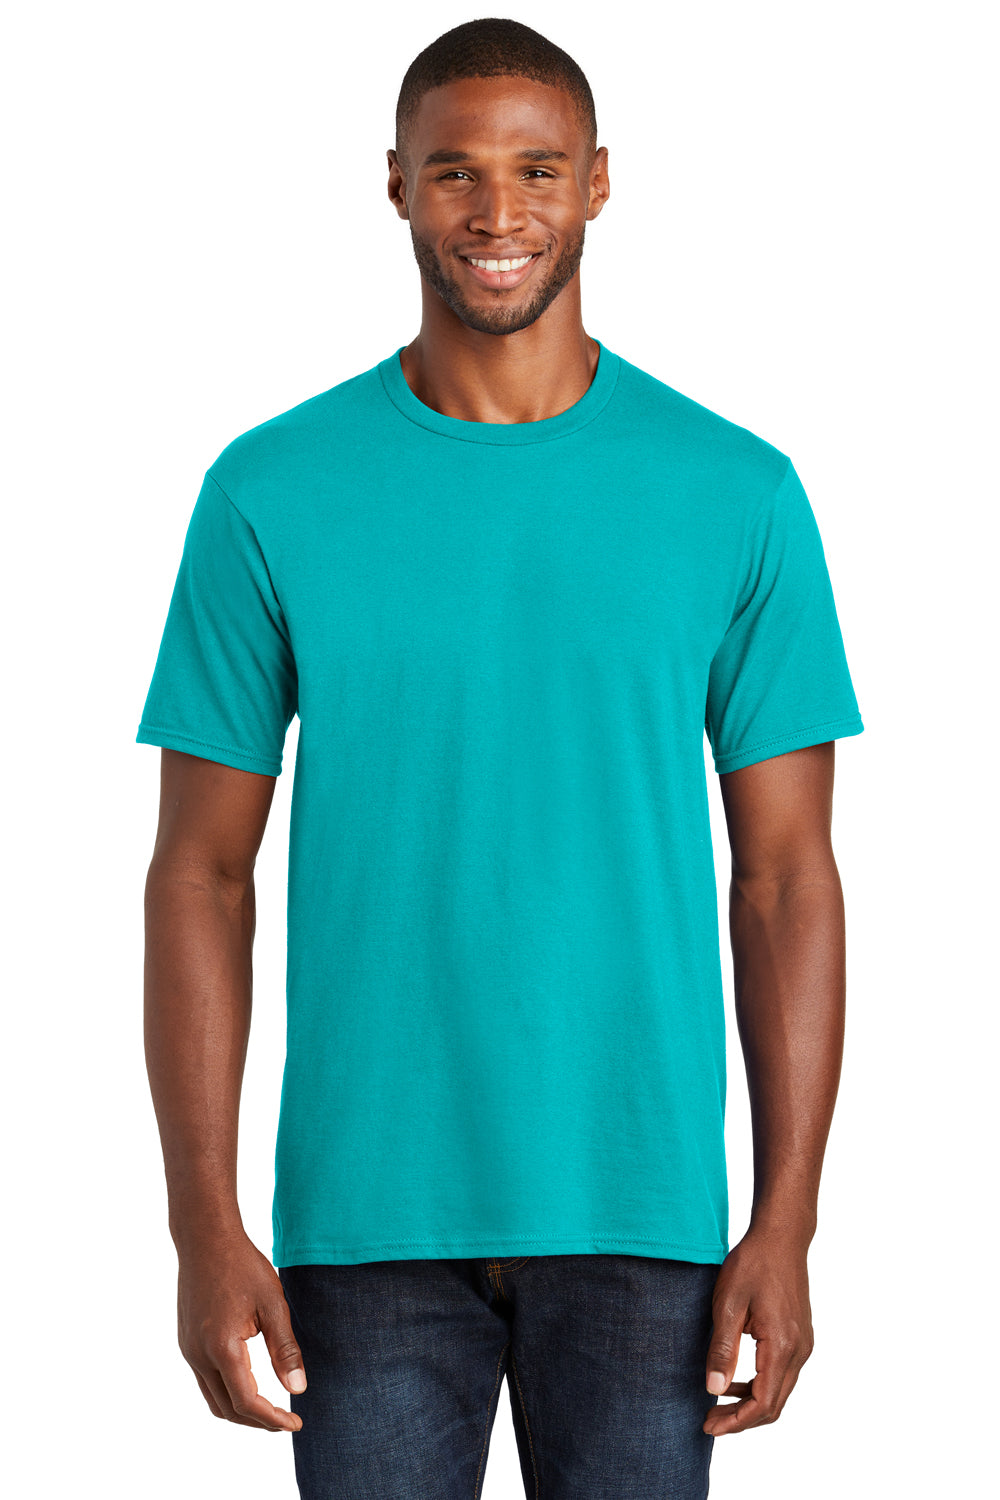 Port & Company PC450 Mens Fan Favorite Short Sleeve Crewneck T-Shirt Aqua Blue Front